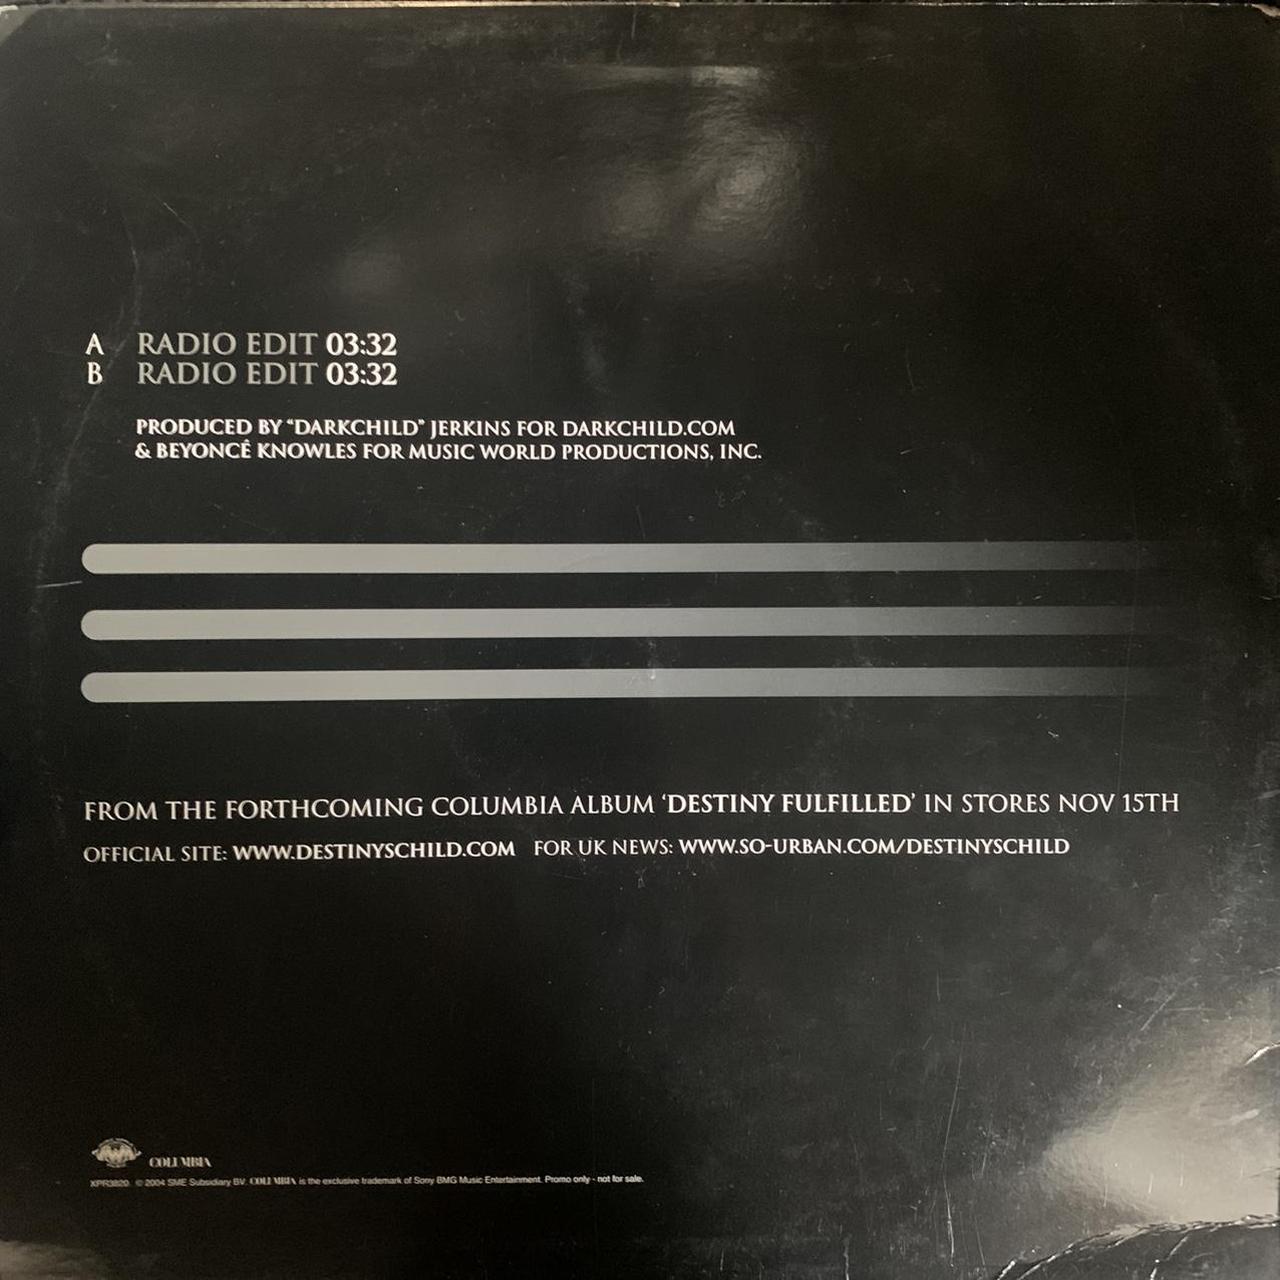 Destiny’s Child “Lose My Breath” Rare 2 Track 12inch Vinyl